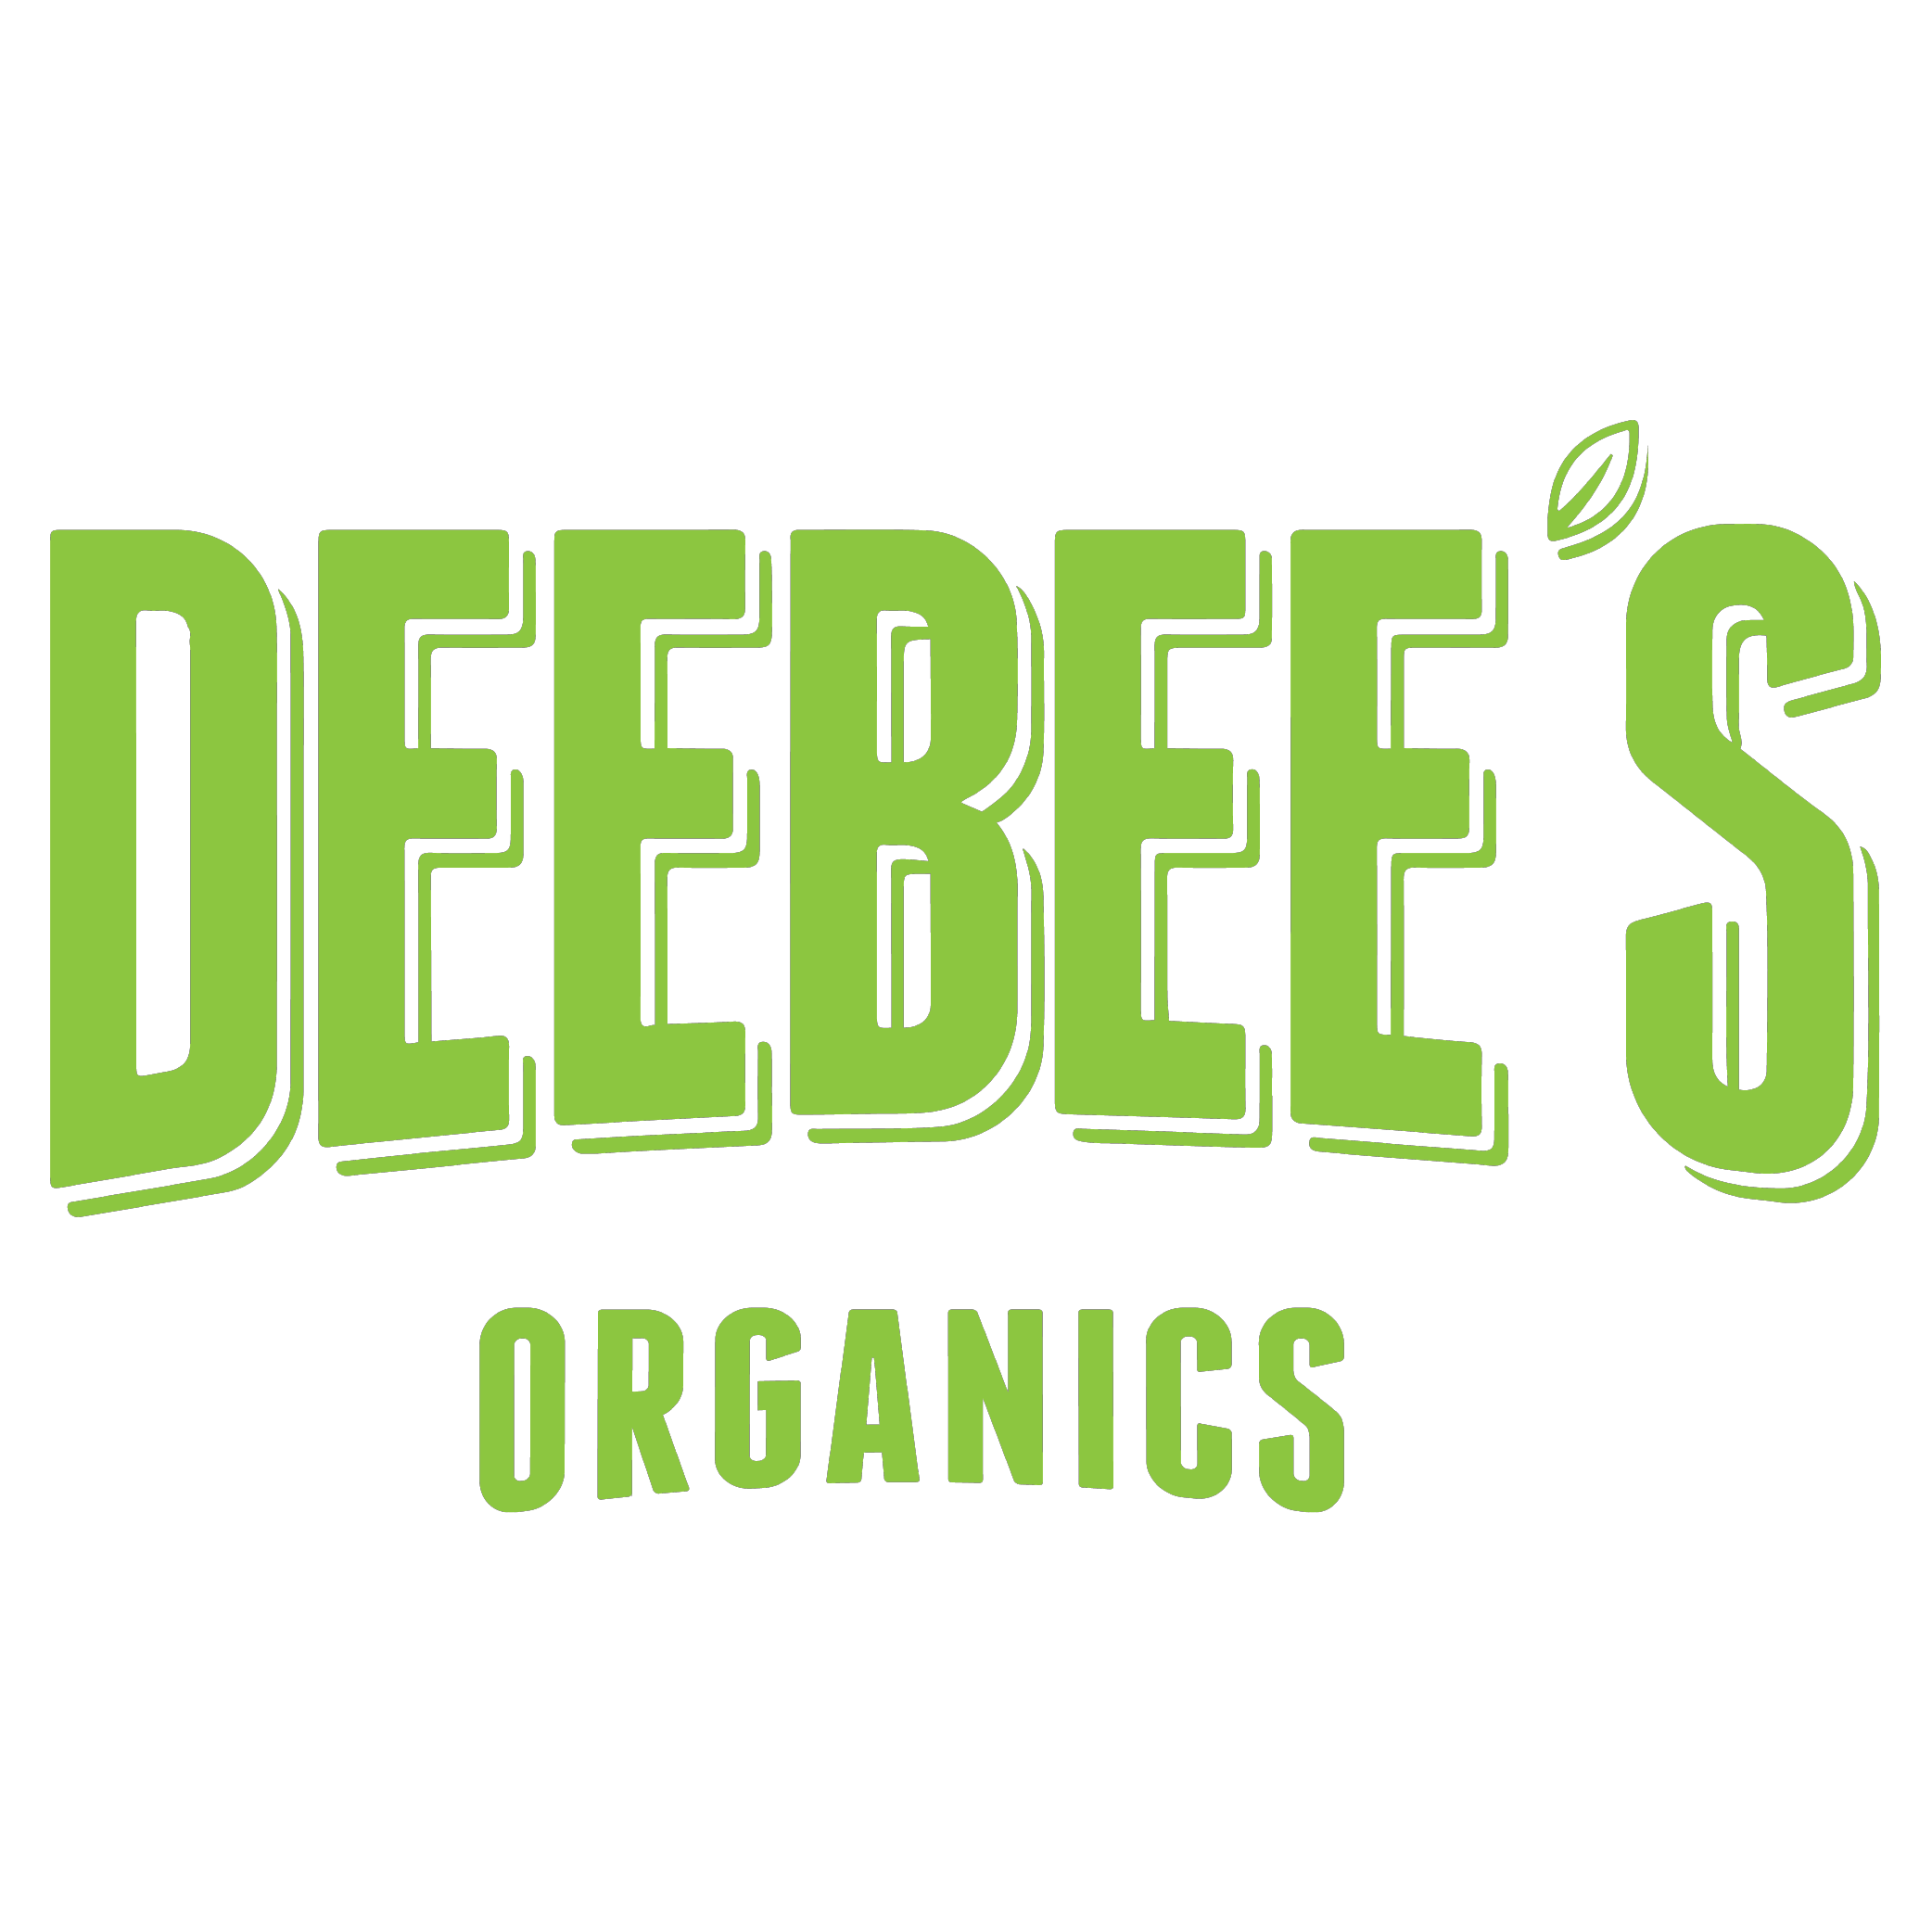 deebees-logo.png